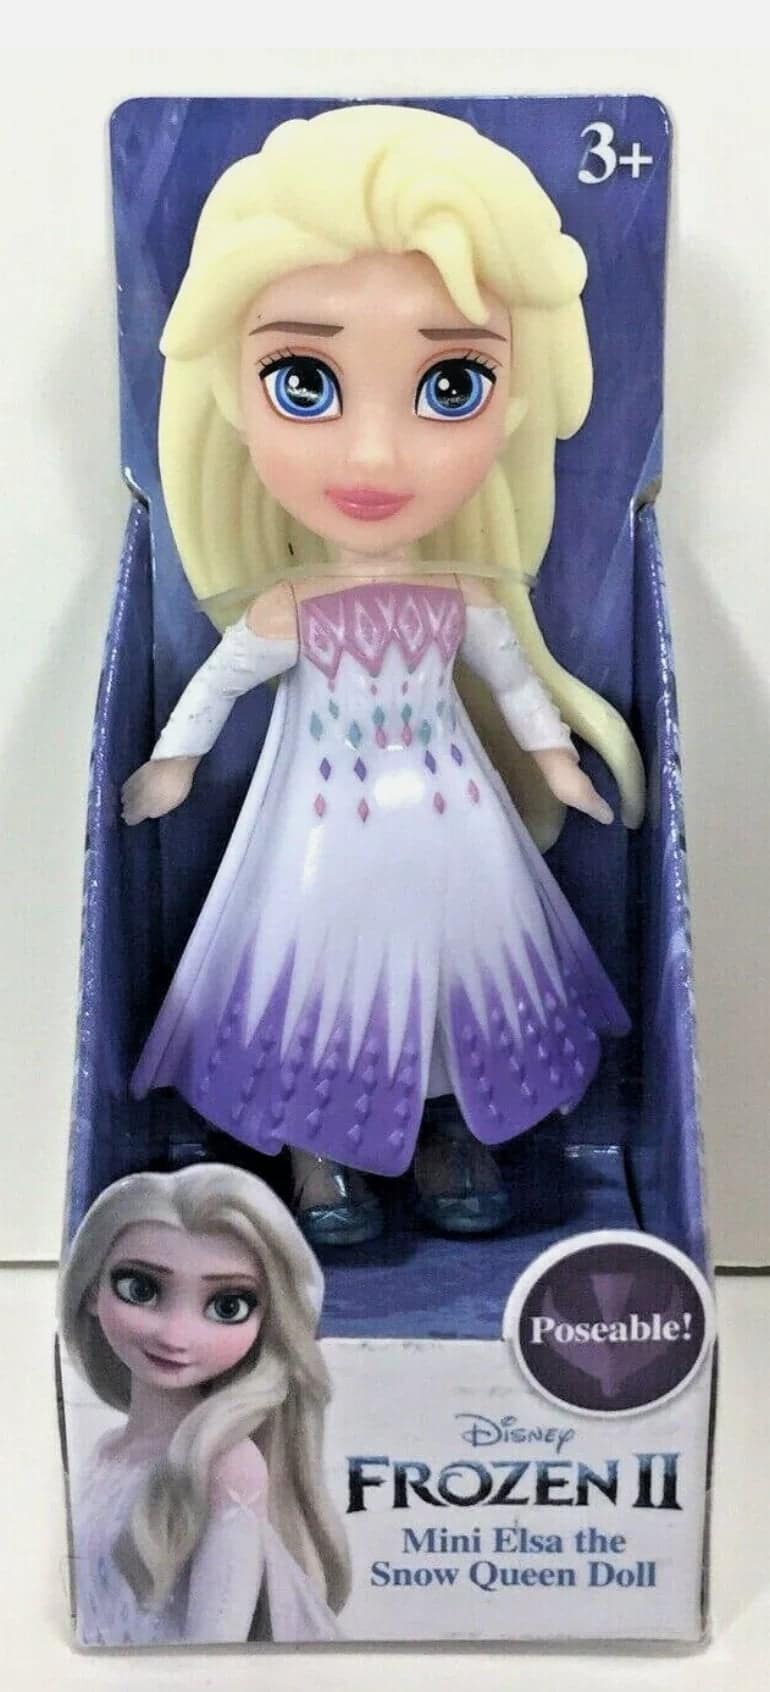 Disney Frozen Princess Little Kingdom Mini Doll Figure Oaken's Ski